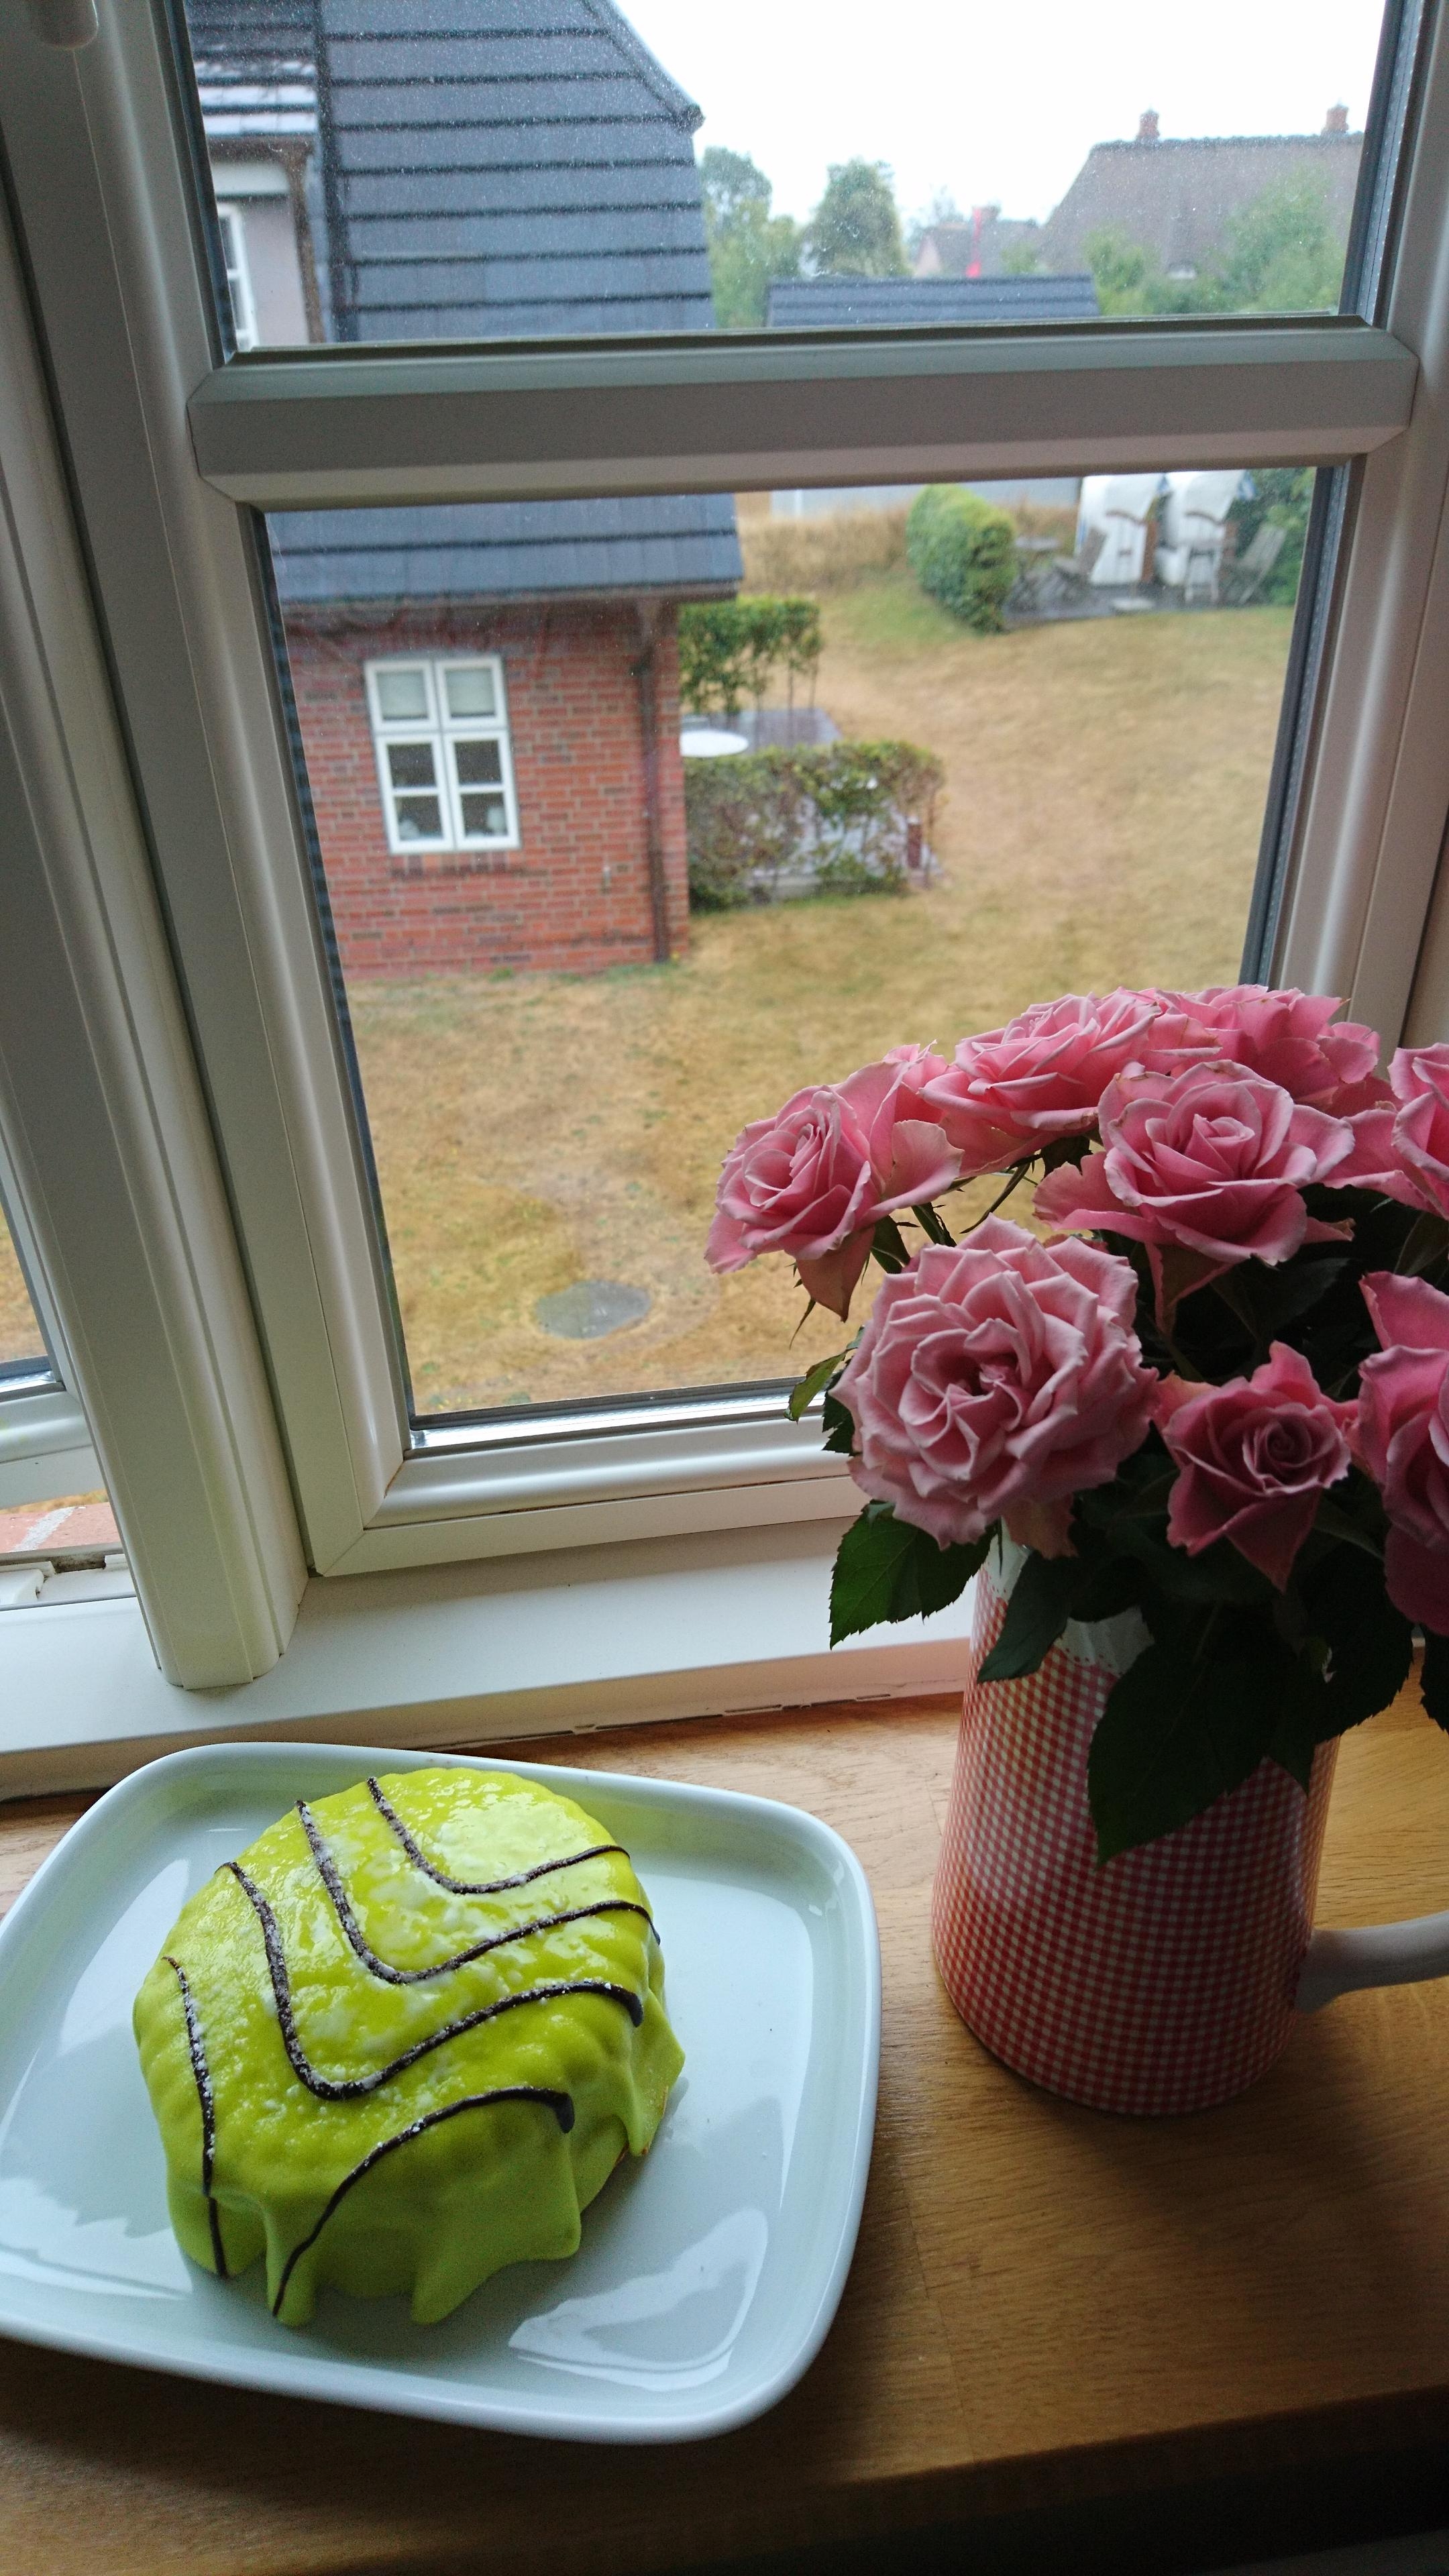 Kaum eine Wiese hier hat noch ihr saftiges grün. 

Kommt halt was grünes auf den Kaffeetisch. #schwedischePrinsesstårta